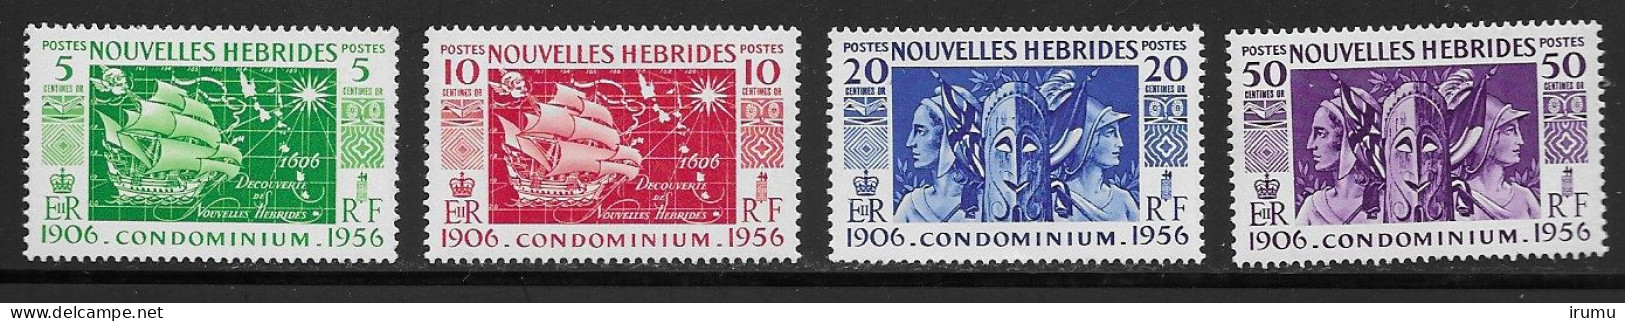 Nlle Hébrides 1956 Série Complète * (Y&T 167-170) Vc 8.5 EUR (SN 2103) - Neufs